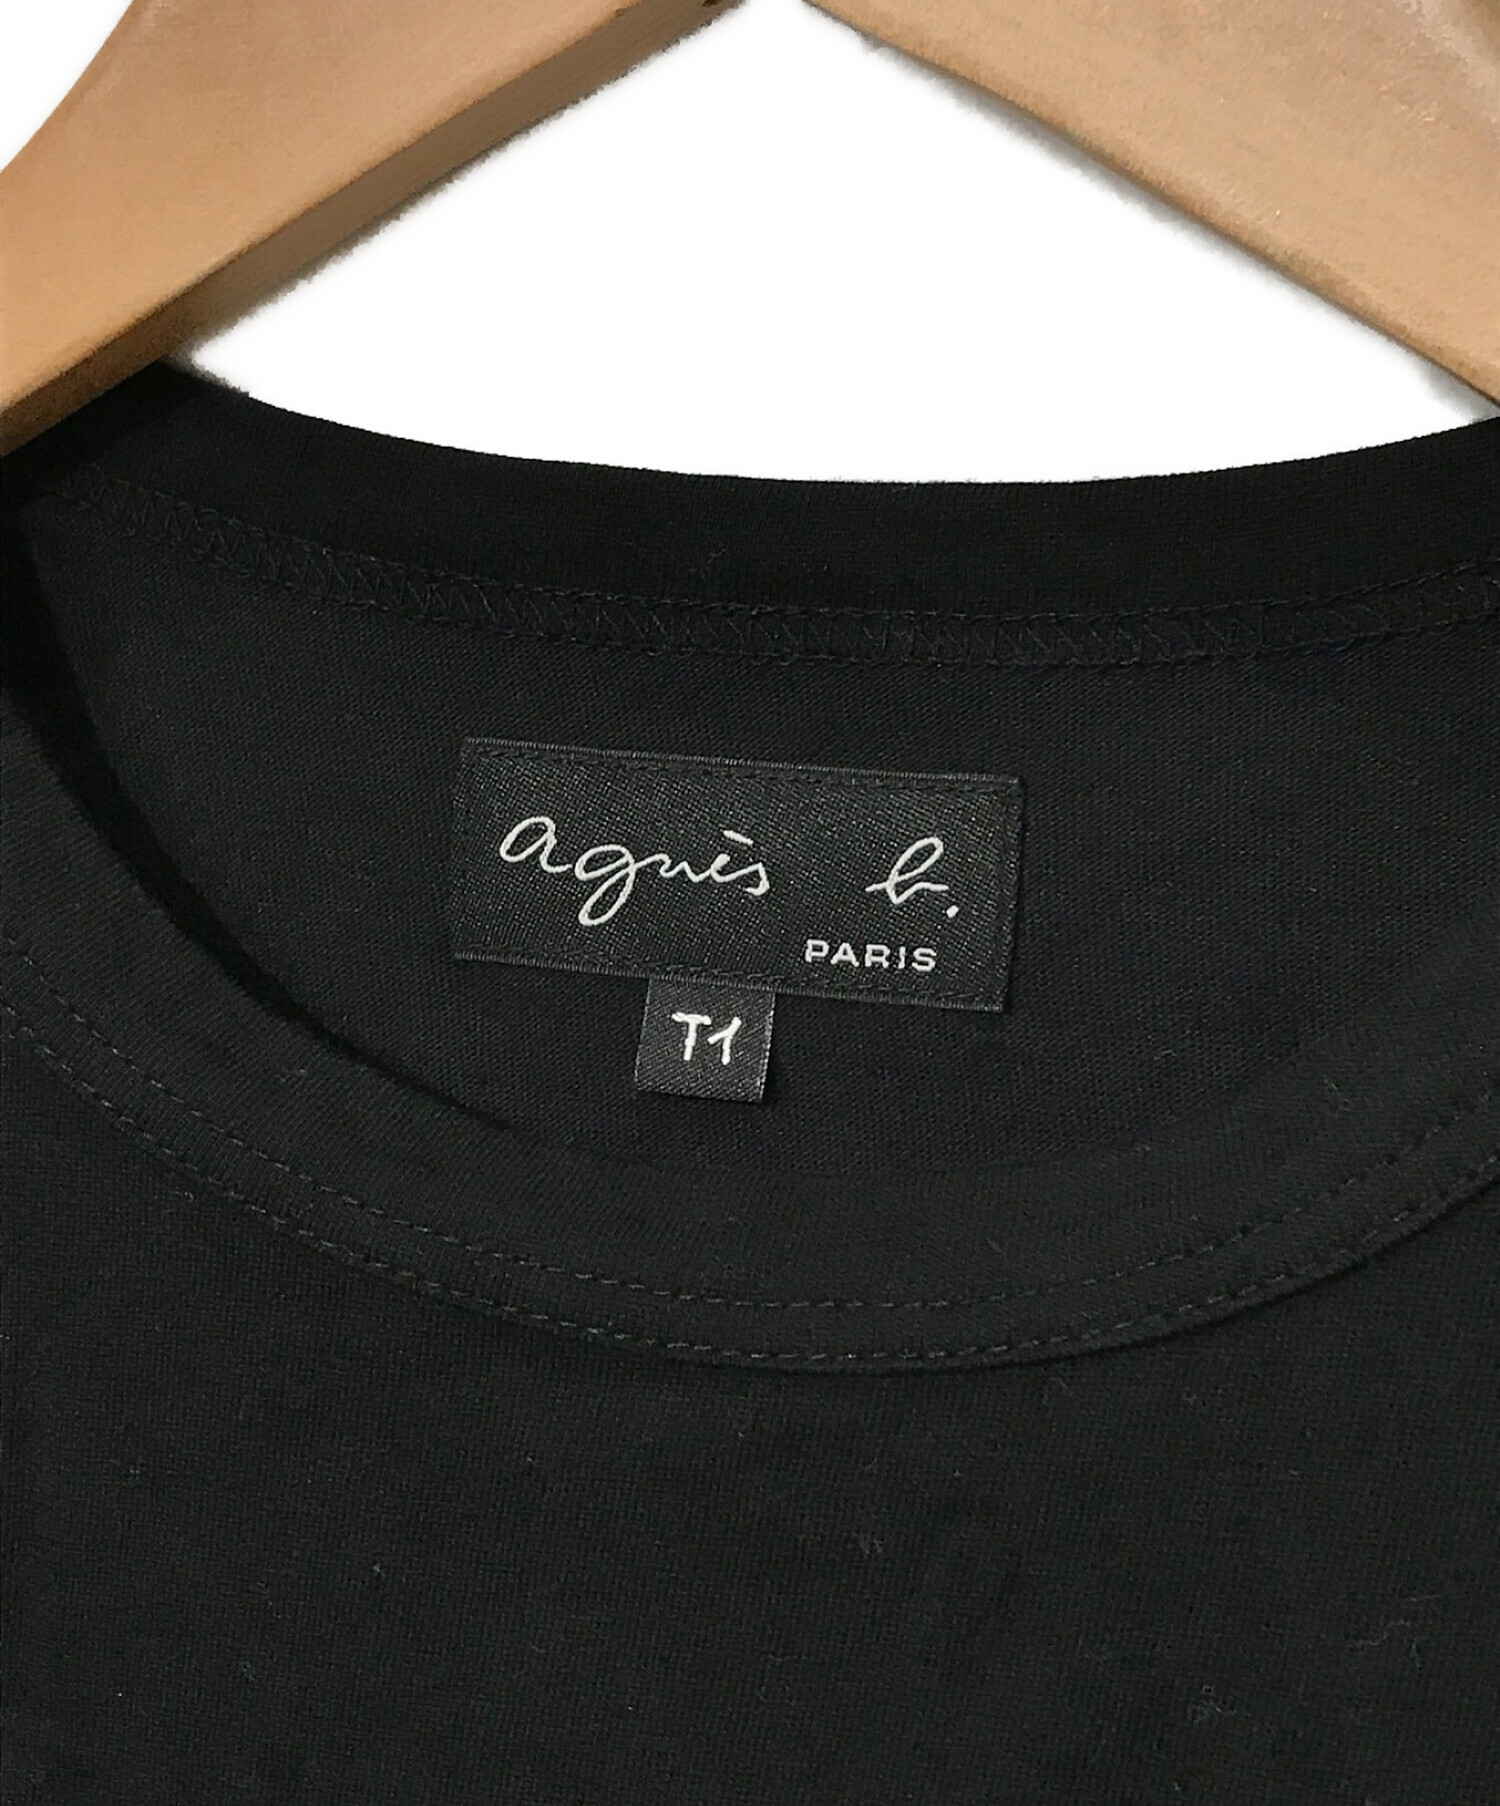 中古・古着通販】agnes b (アニエスベー) プリントTシャツ ブラック